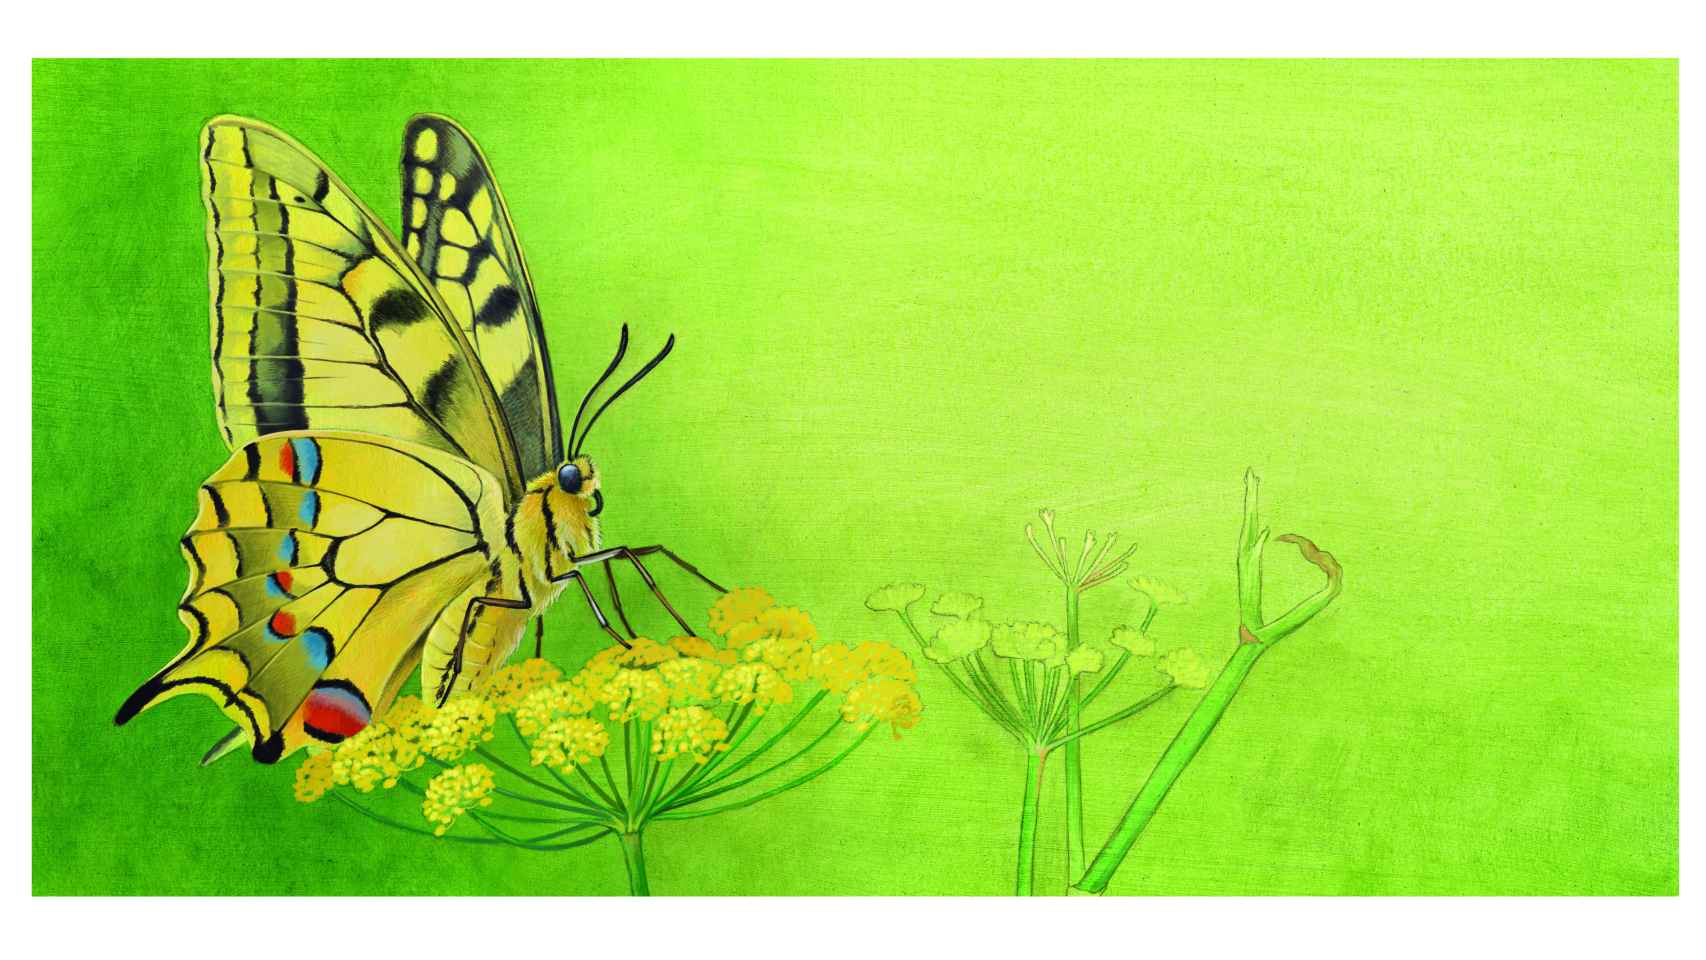 Una de las ilustraciones de una mariposa del libro 'Te necesitamos'.